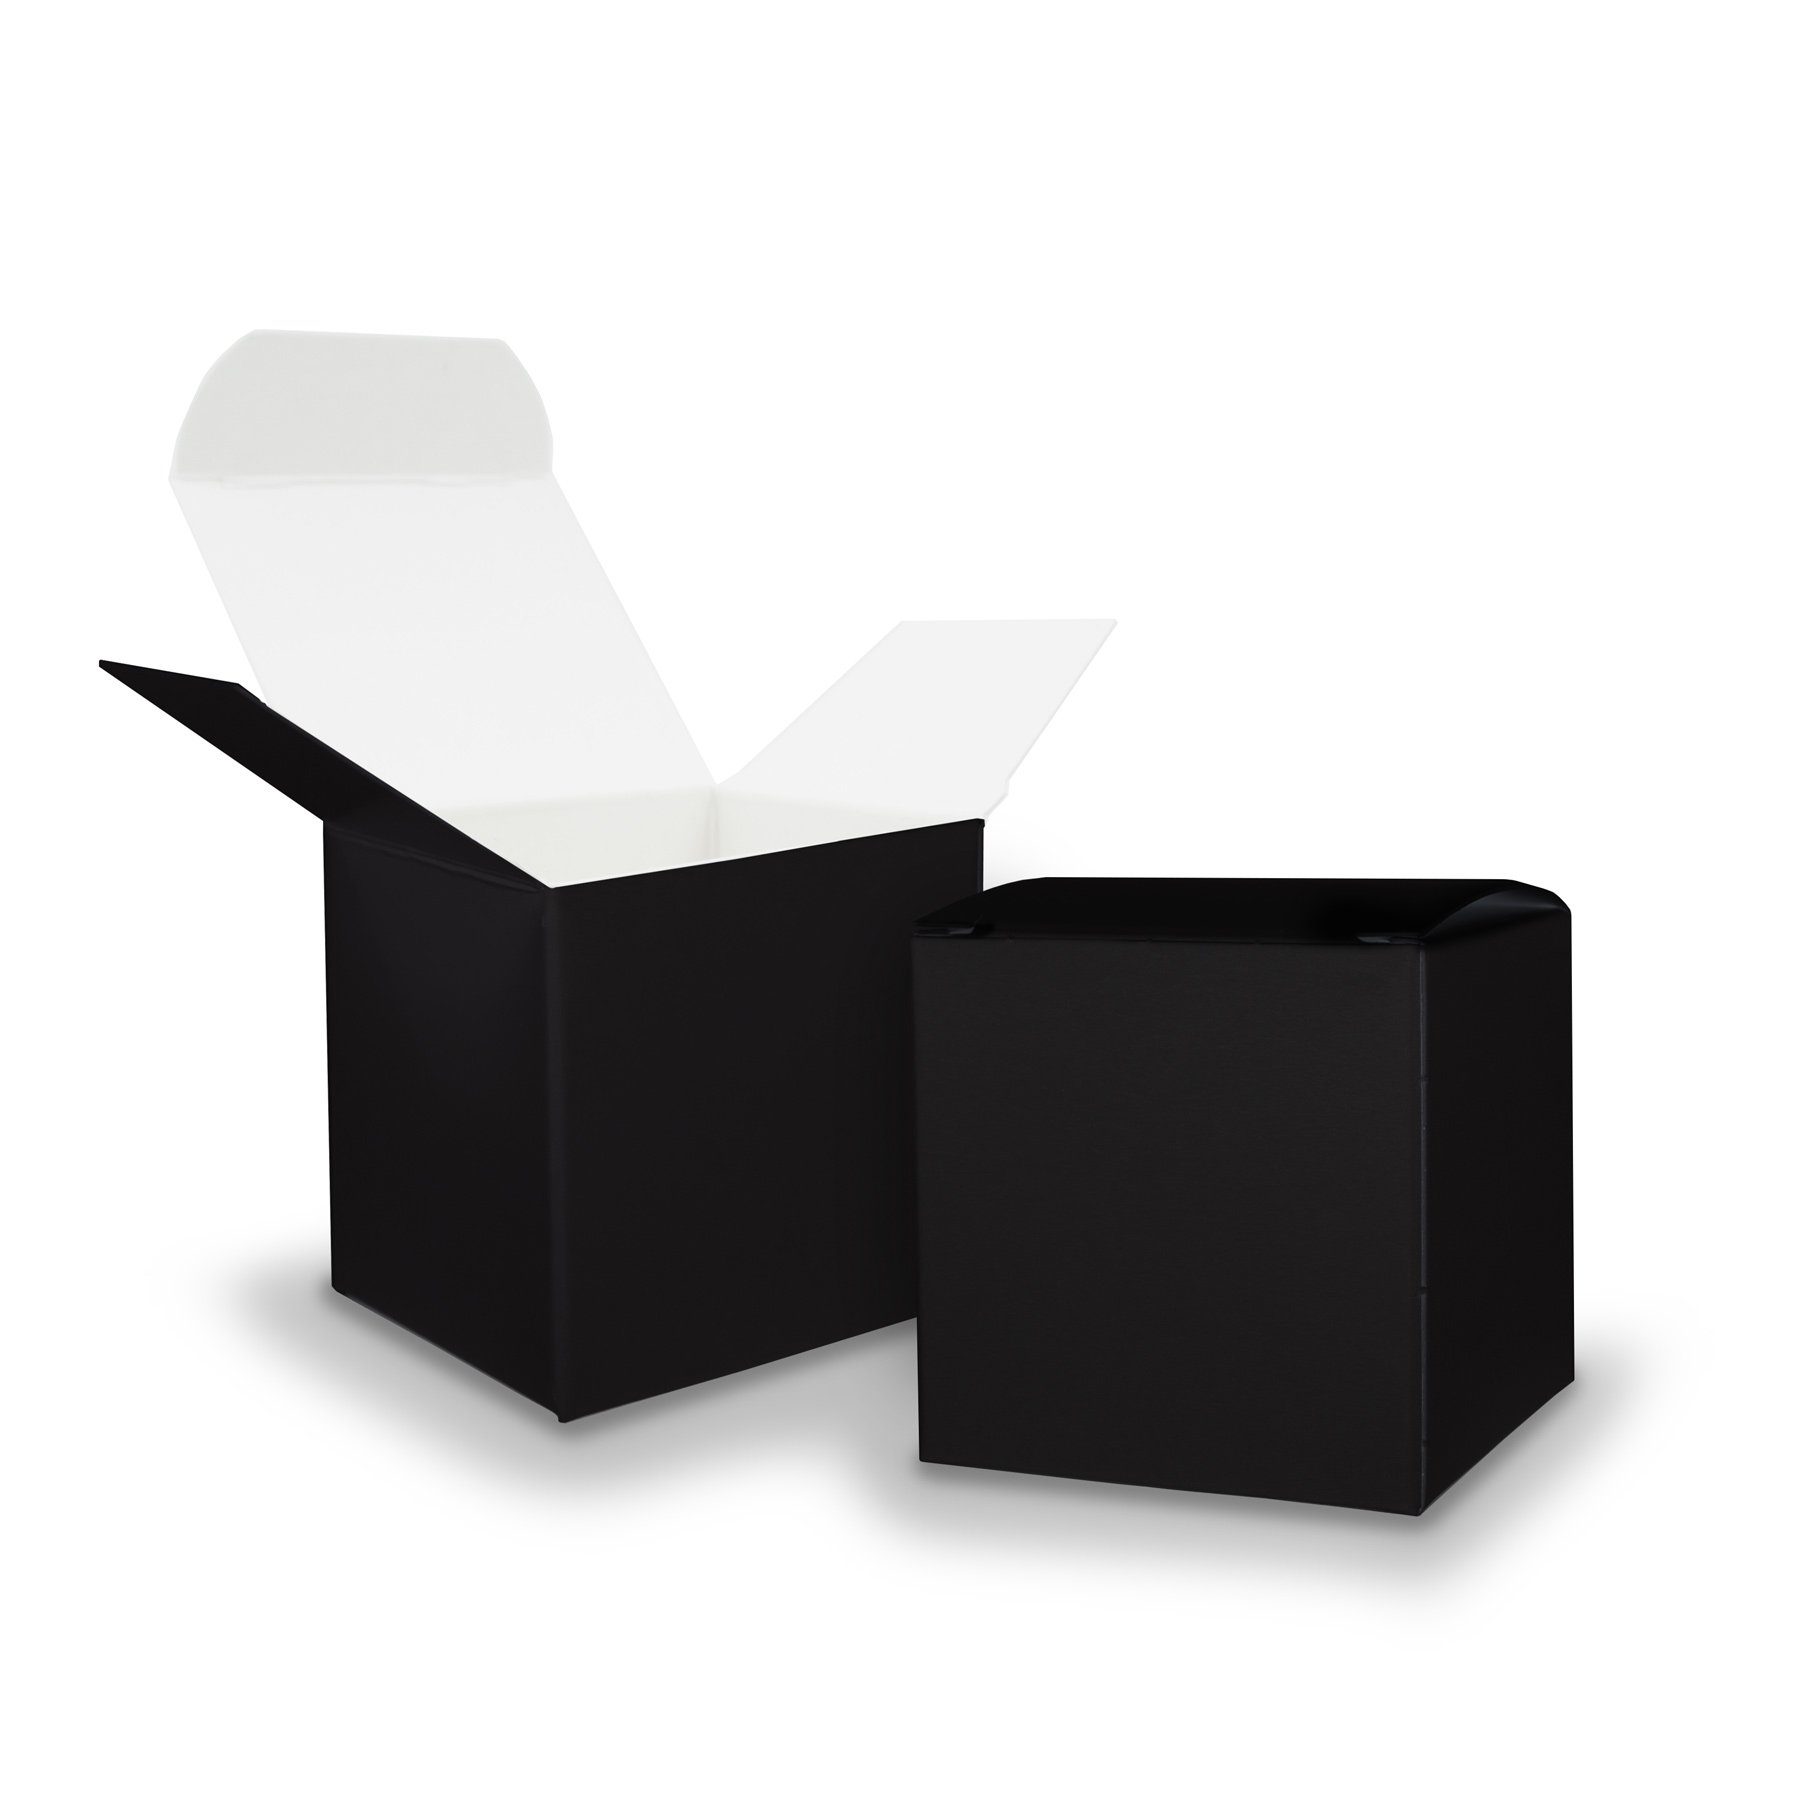 Würfelbox Gastgeschenk Geschenkpapier Karton itenga schwarz aus itenga 5x 6,5x6,5cm